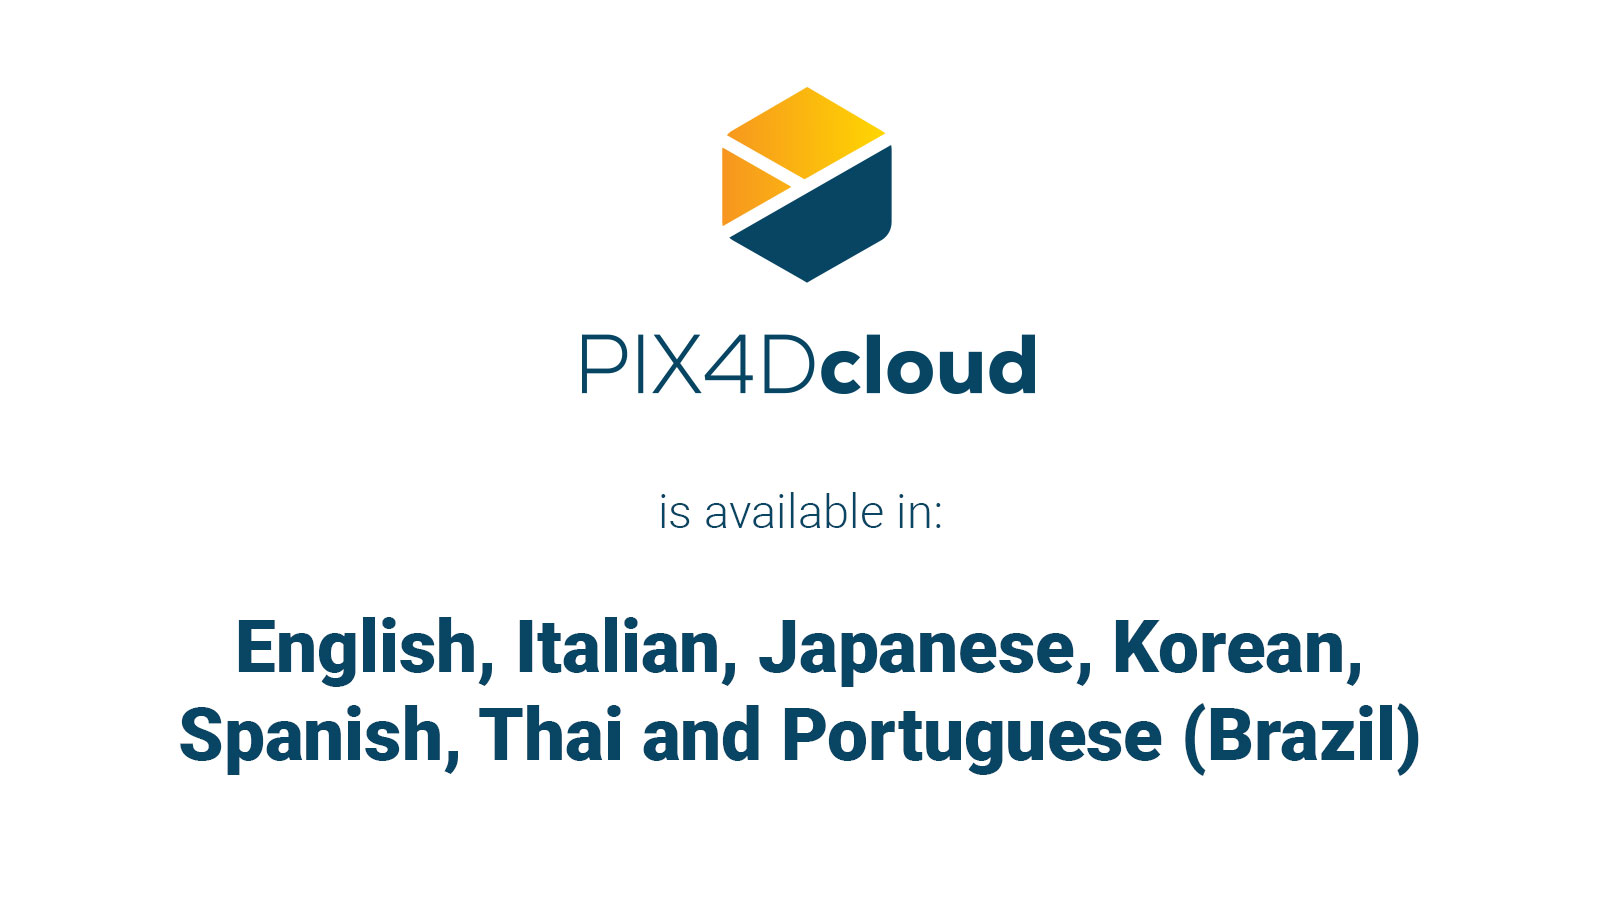 PIX4Dcloud is multilingual